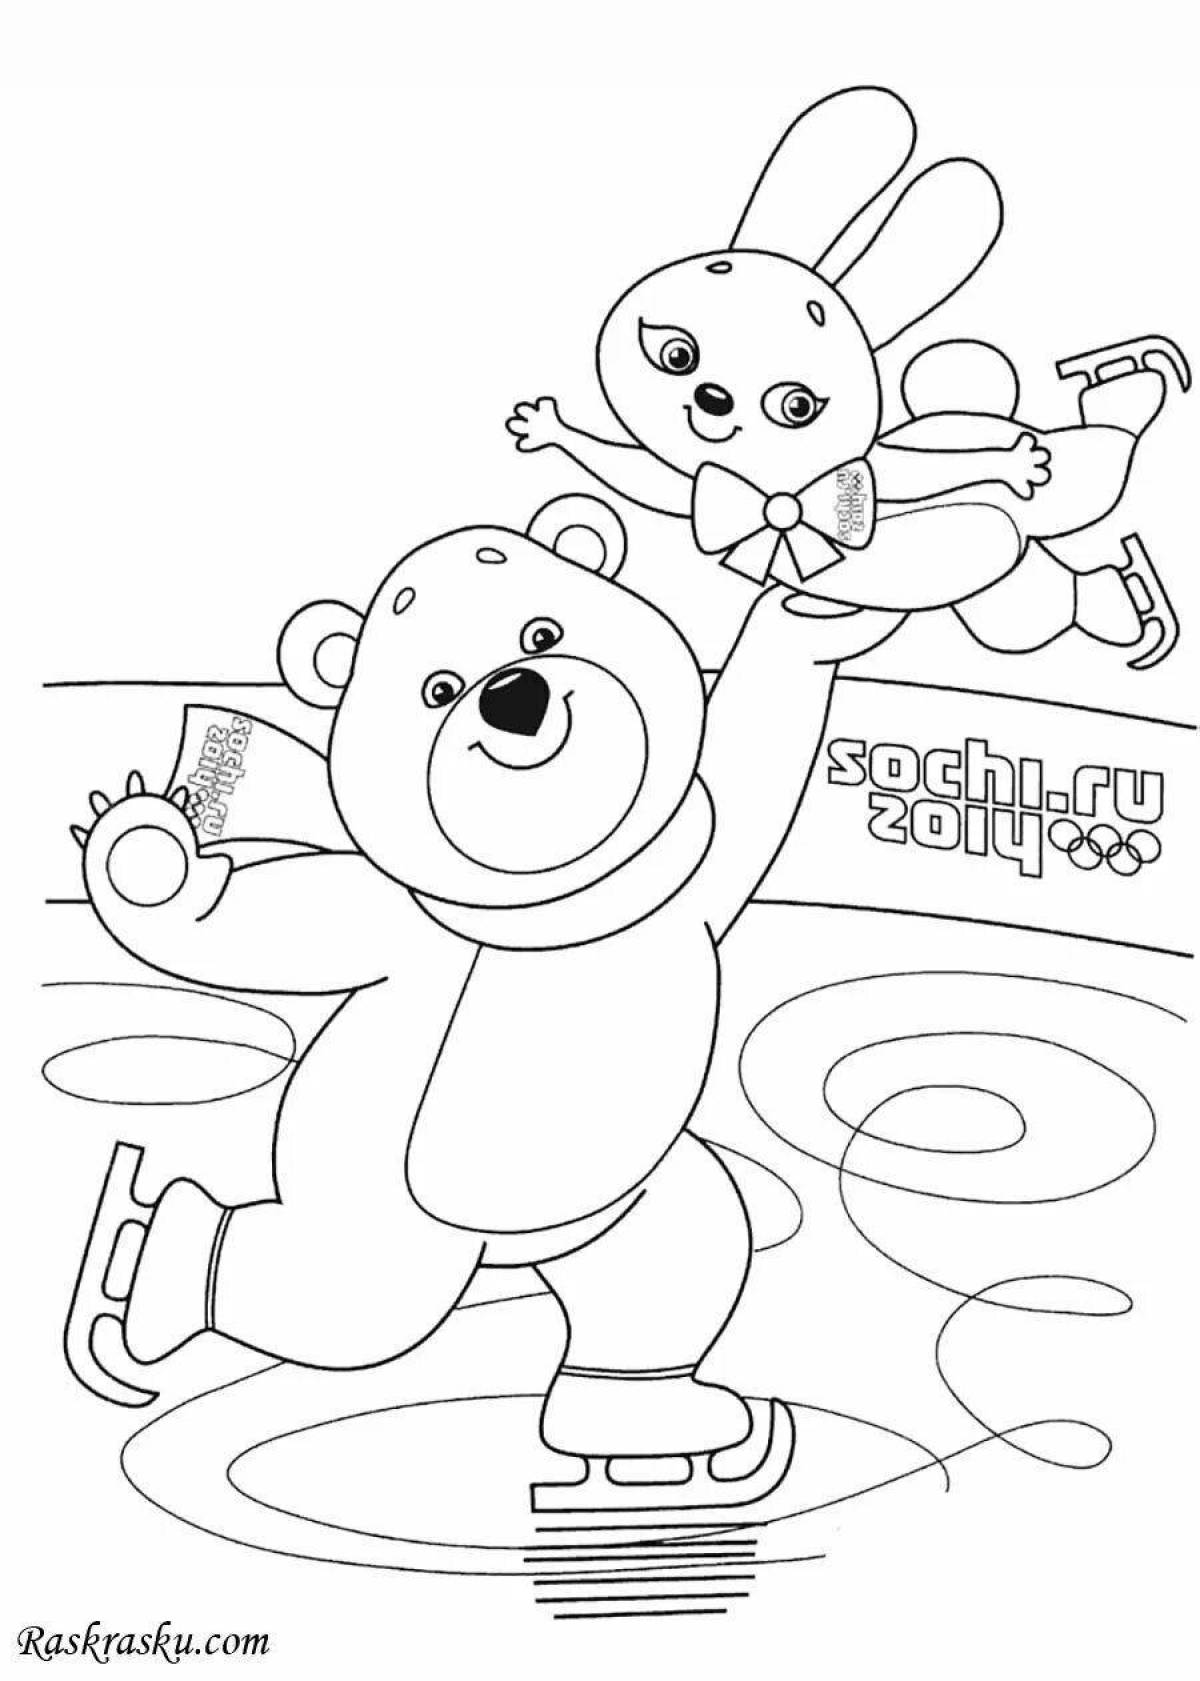 Анимированная раскраска для детских олимпийских видов спорта